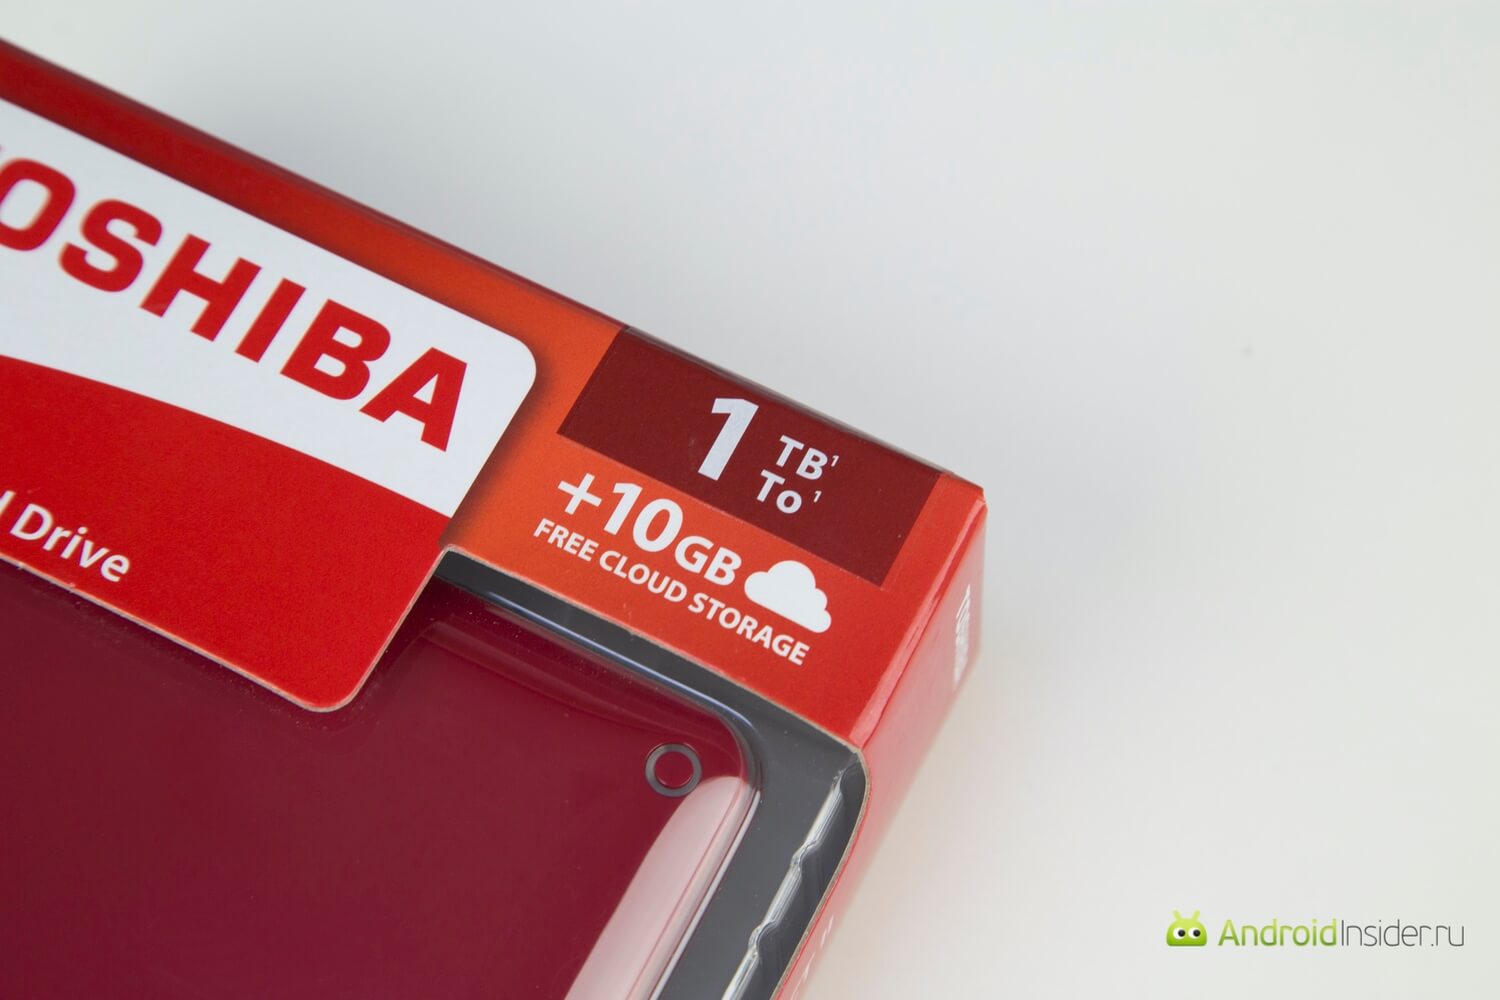 Toshiba Canvio Connect II: не совсем обычный жесткий диск. Фото.